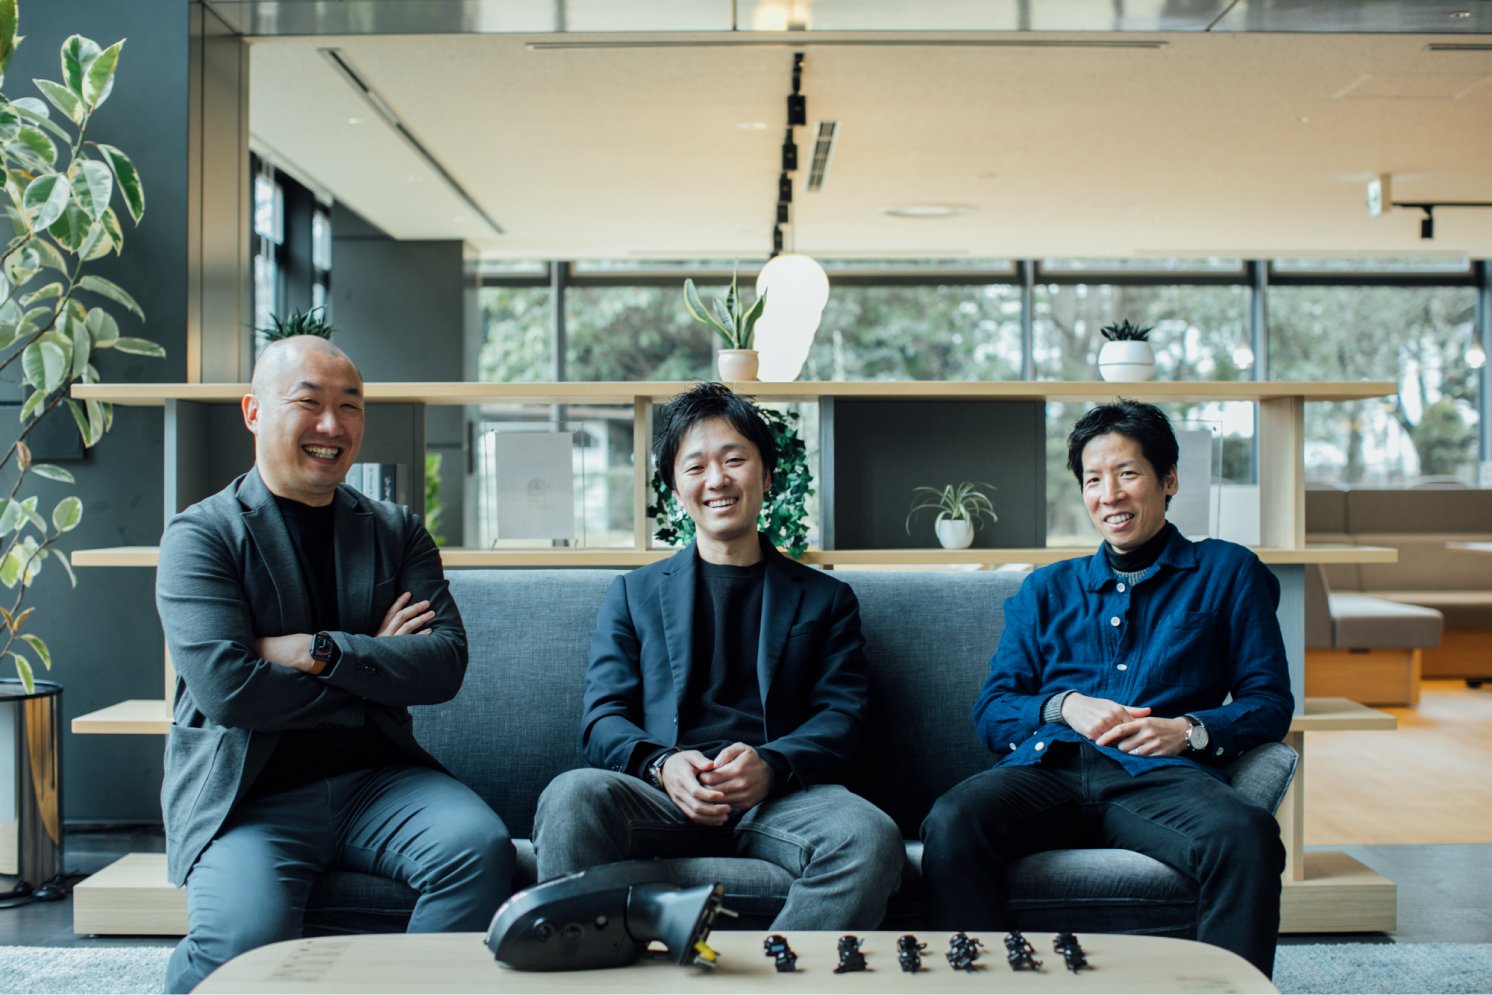 左から内田氏、秋江氏、渡辺氏 | Make New Magazine「未来の定番」をつくるために、パナソニックのリアルな姿を伝えるメディア